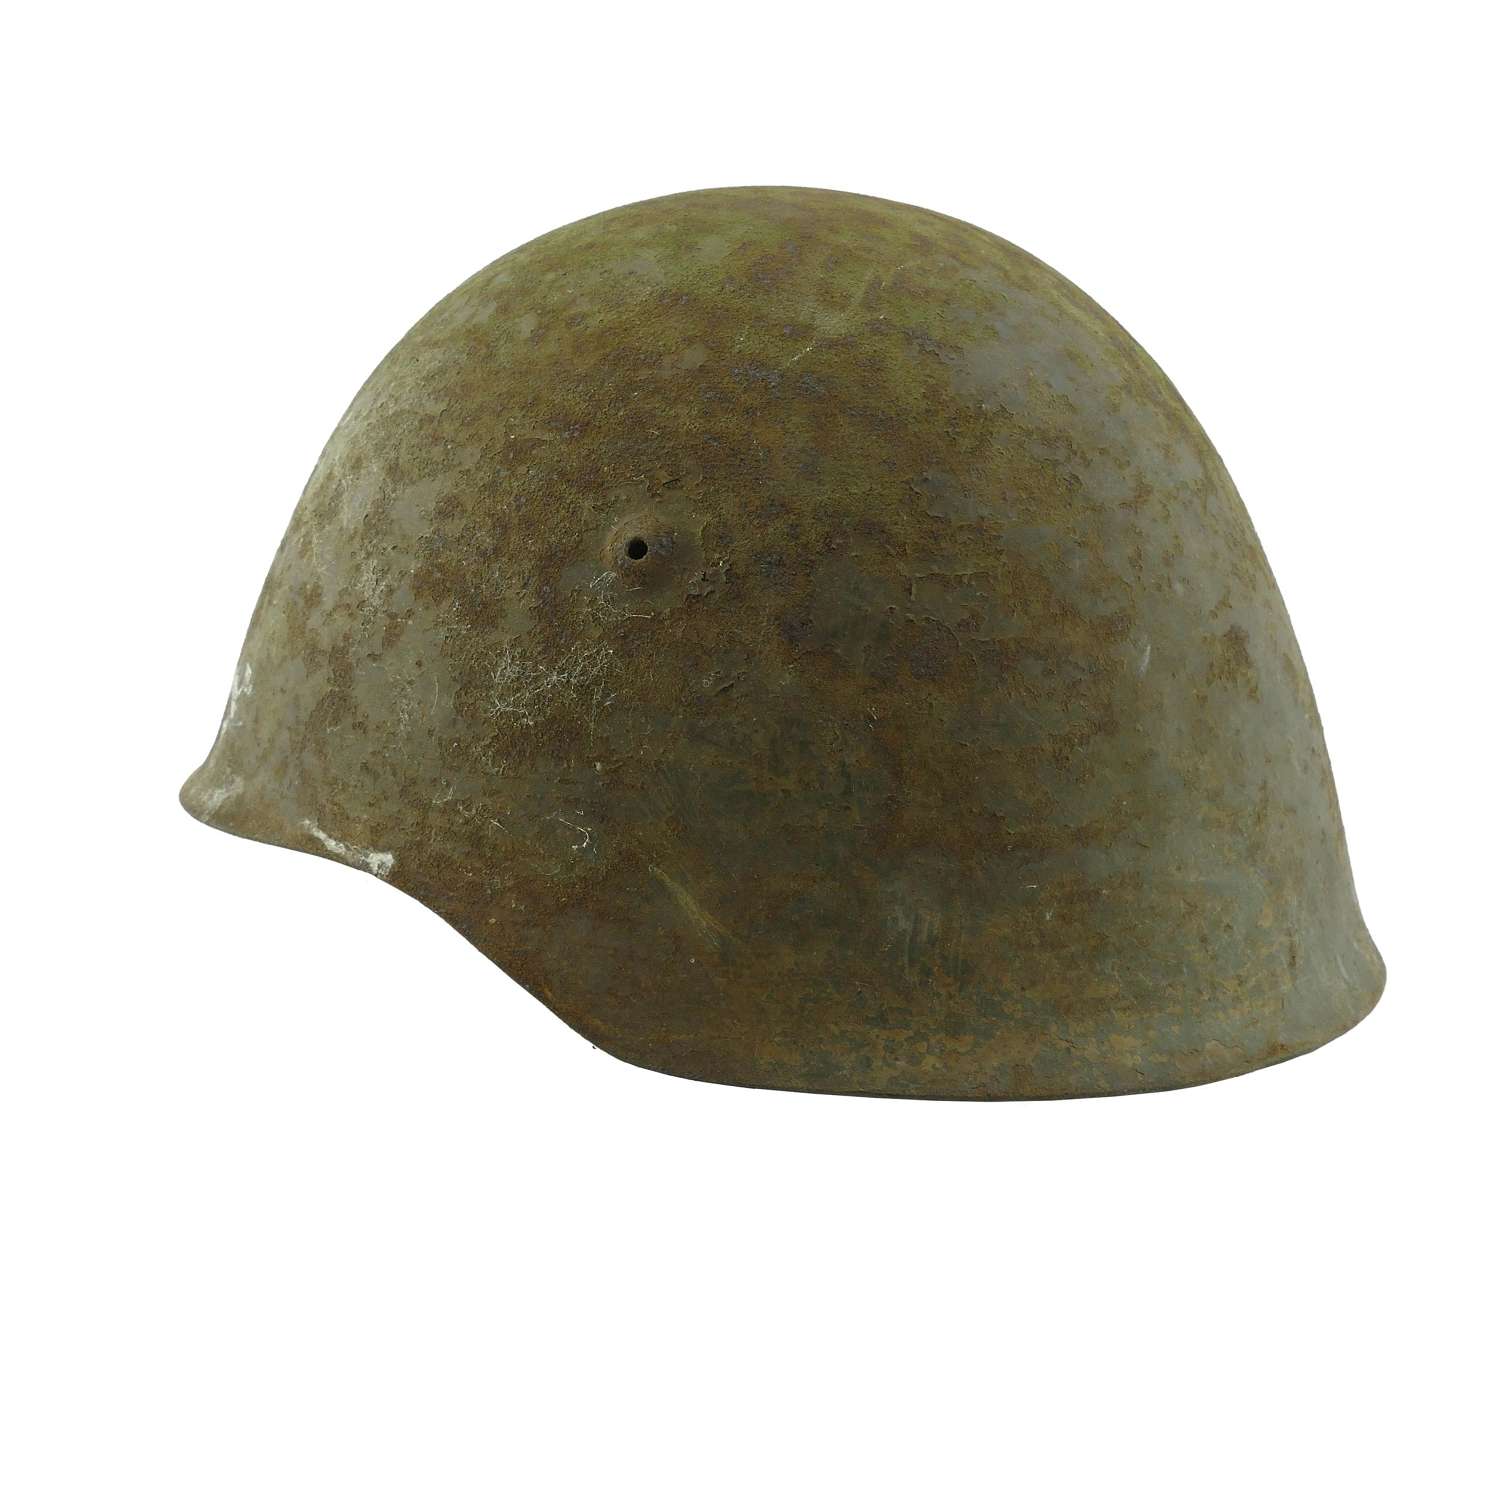 Portuguese M1940 steel helmet